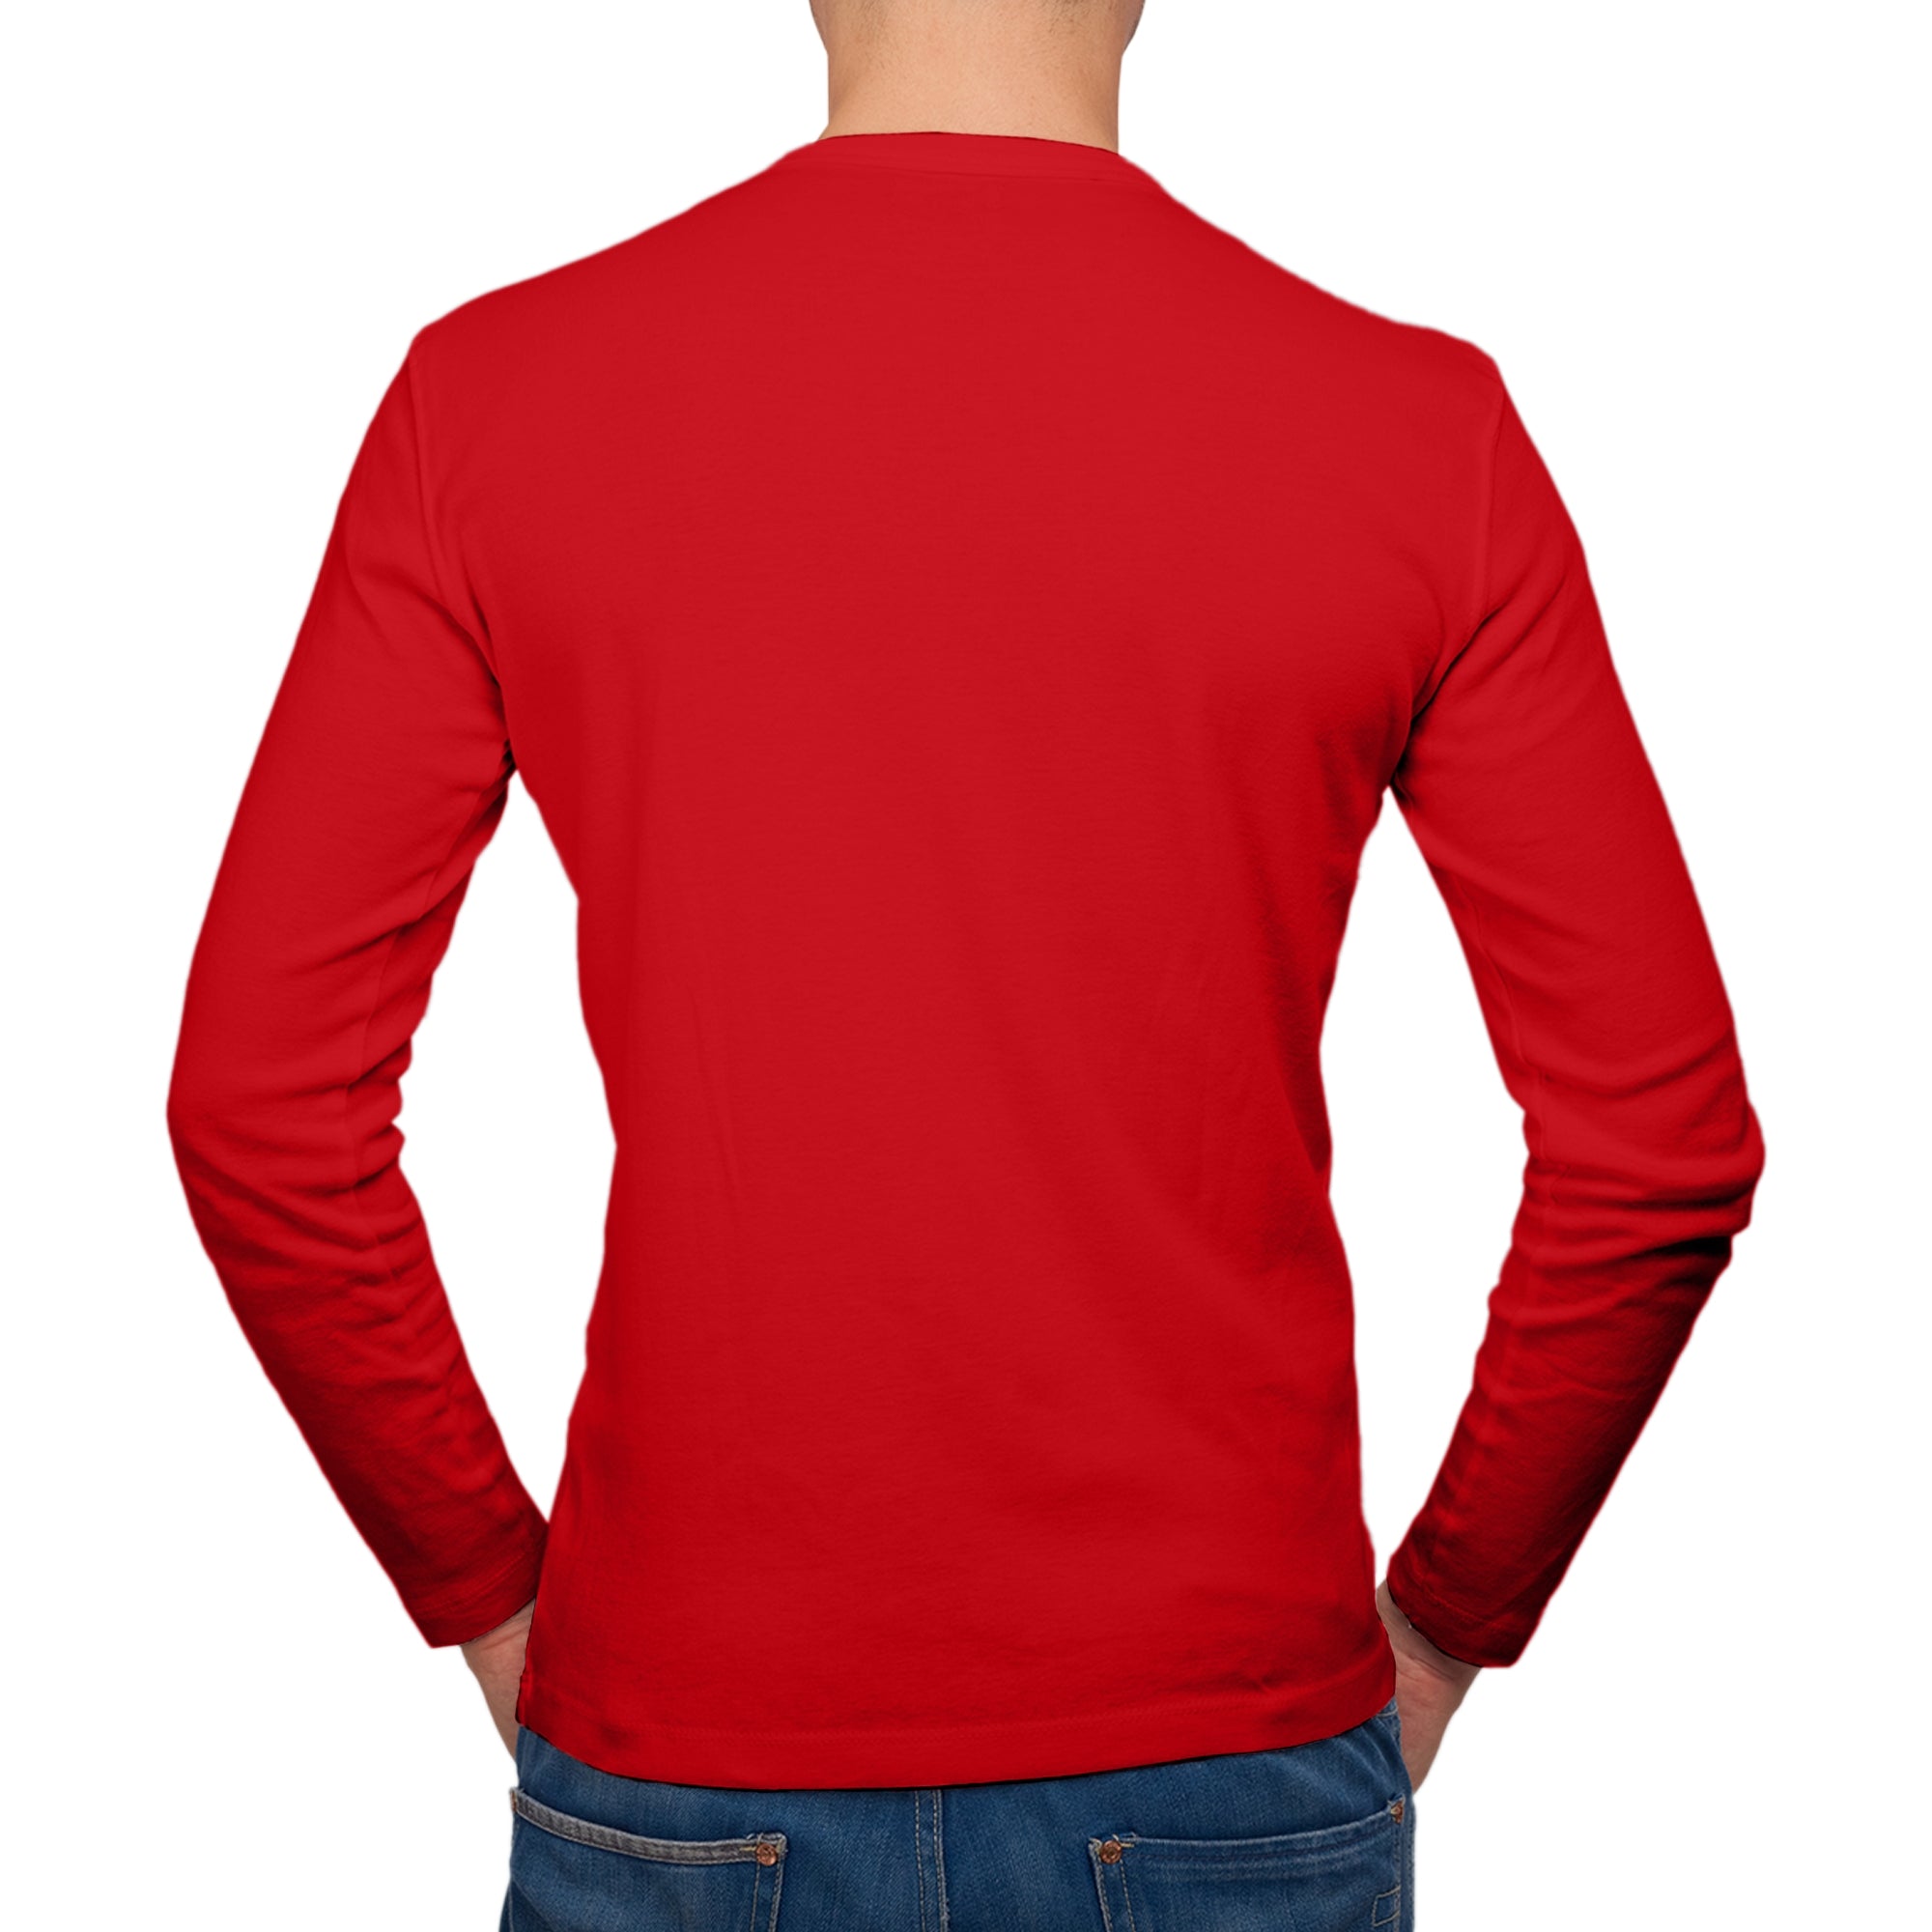 Full Sleeves Red T-Shirt For Men